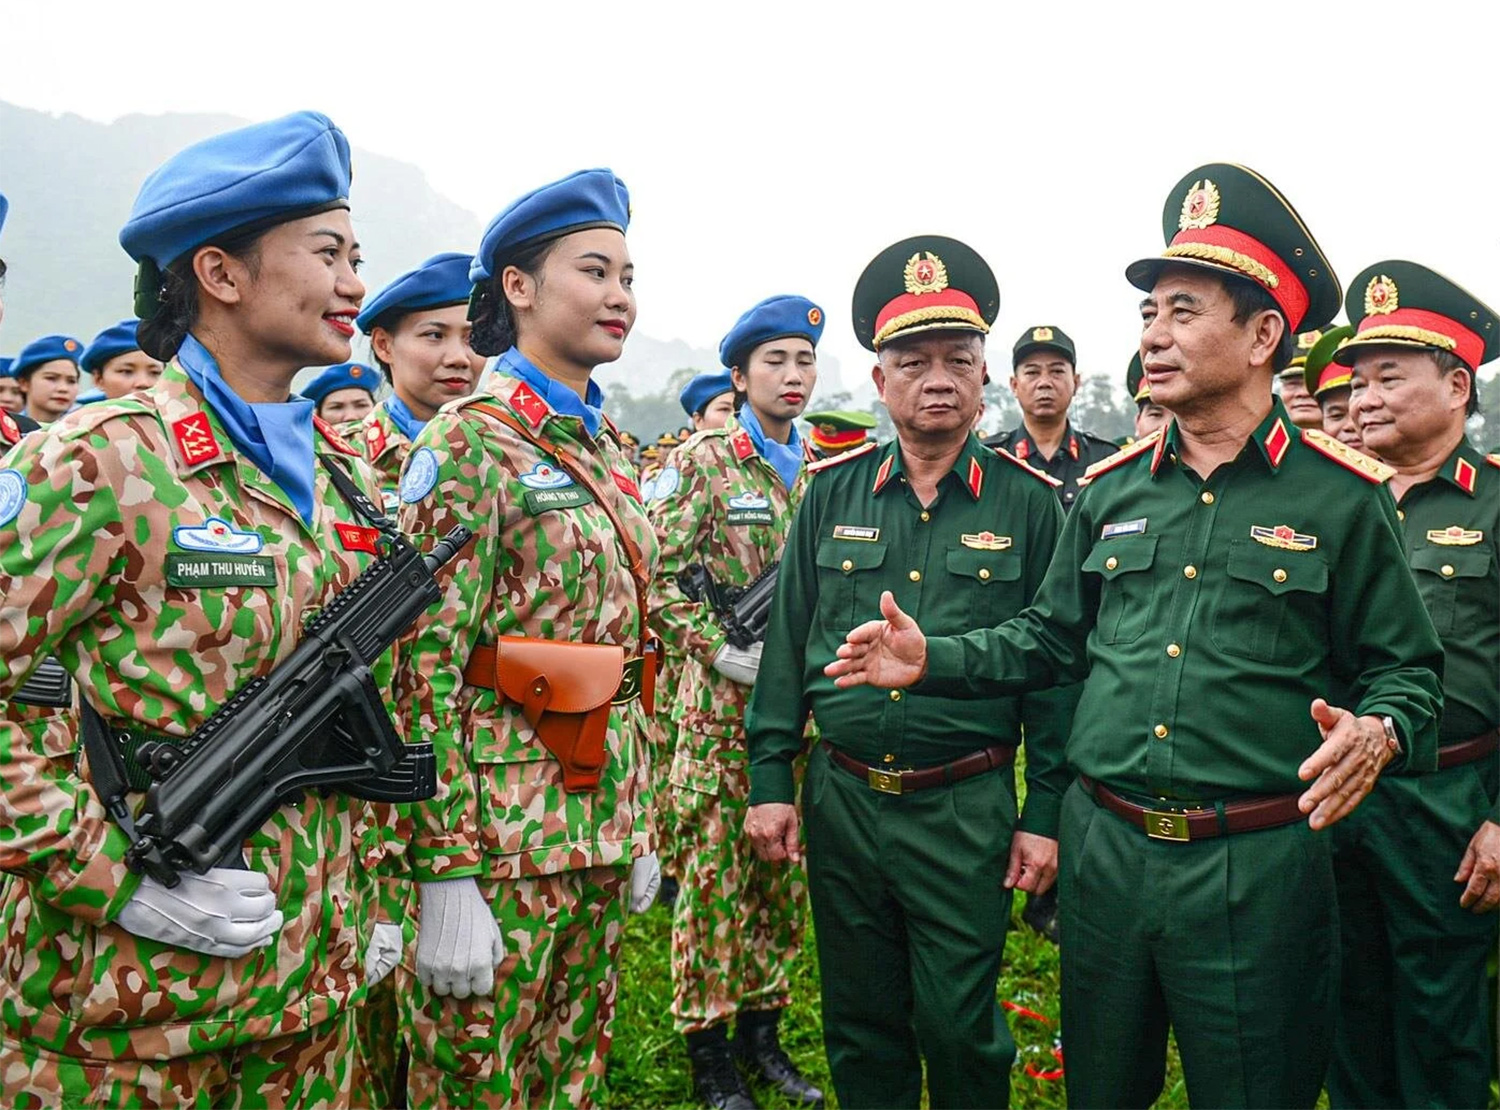 Vận dụng và phát triển sáng tạo tư tưởng Hồ Chí Minh về “chính trị trọng hơn quân sự” trong xây dựng Quân đội nhân dân Việt Nam tinh nhuệ về chính trị